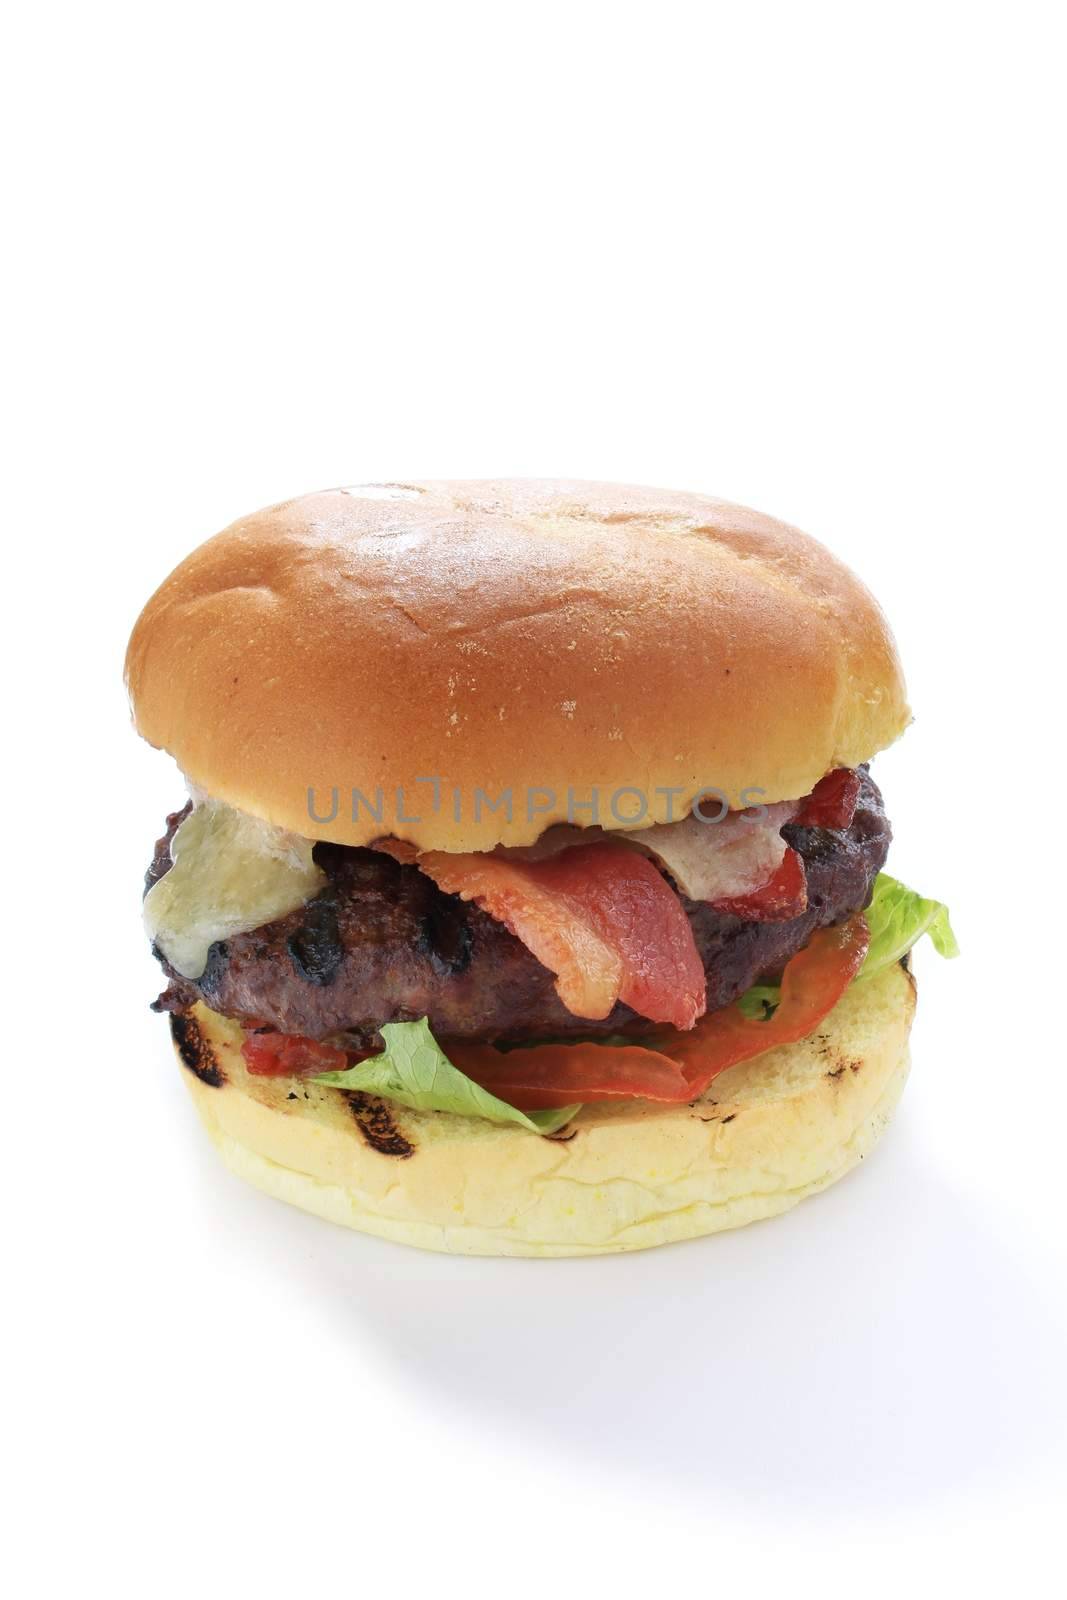 cbacon and cheese burger in brioche bun